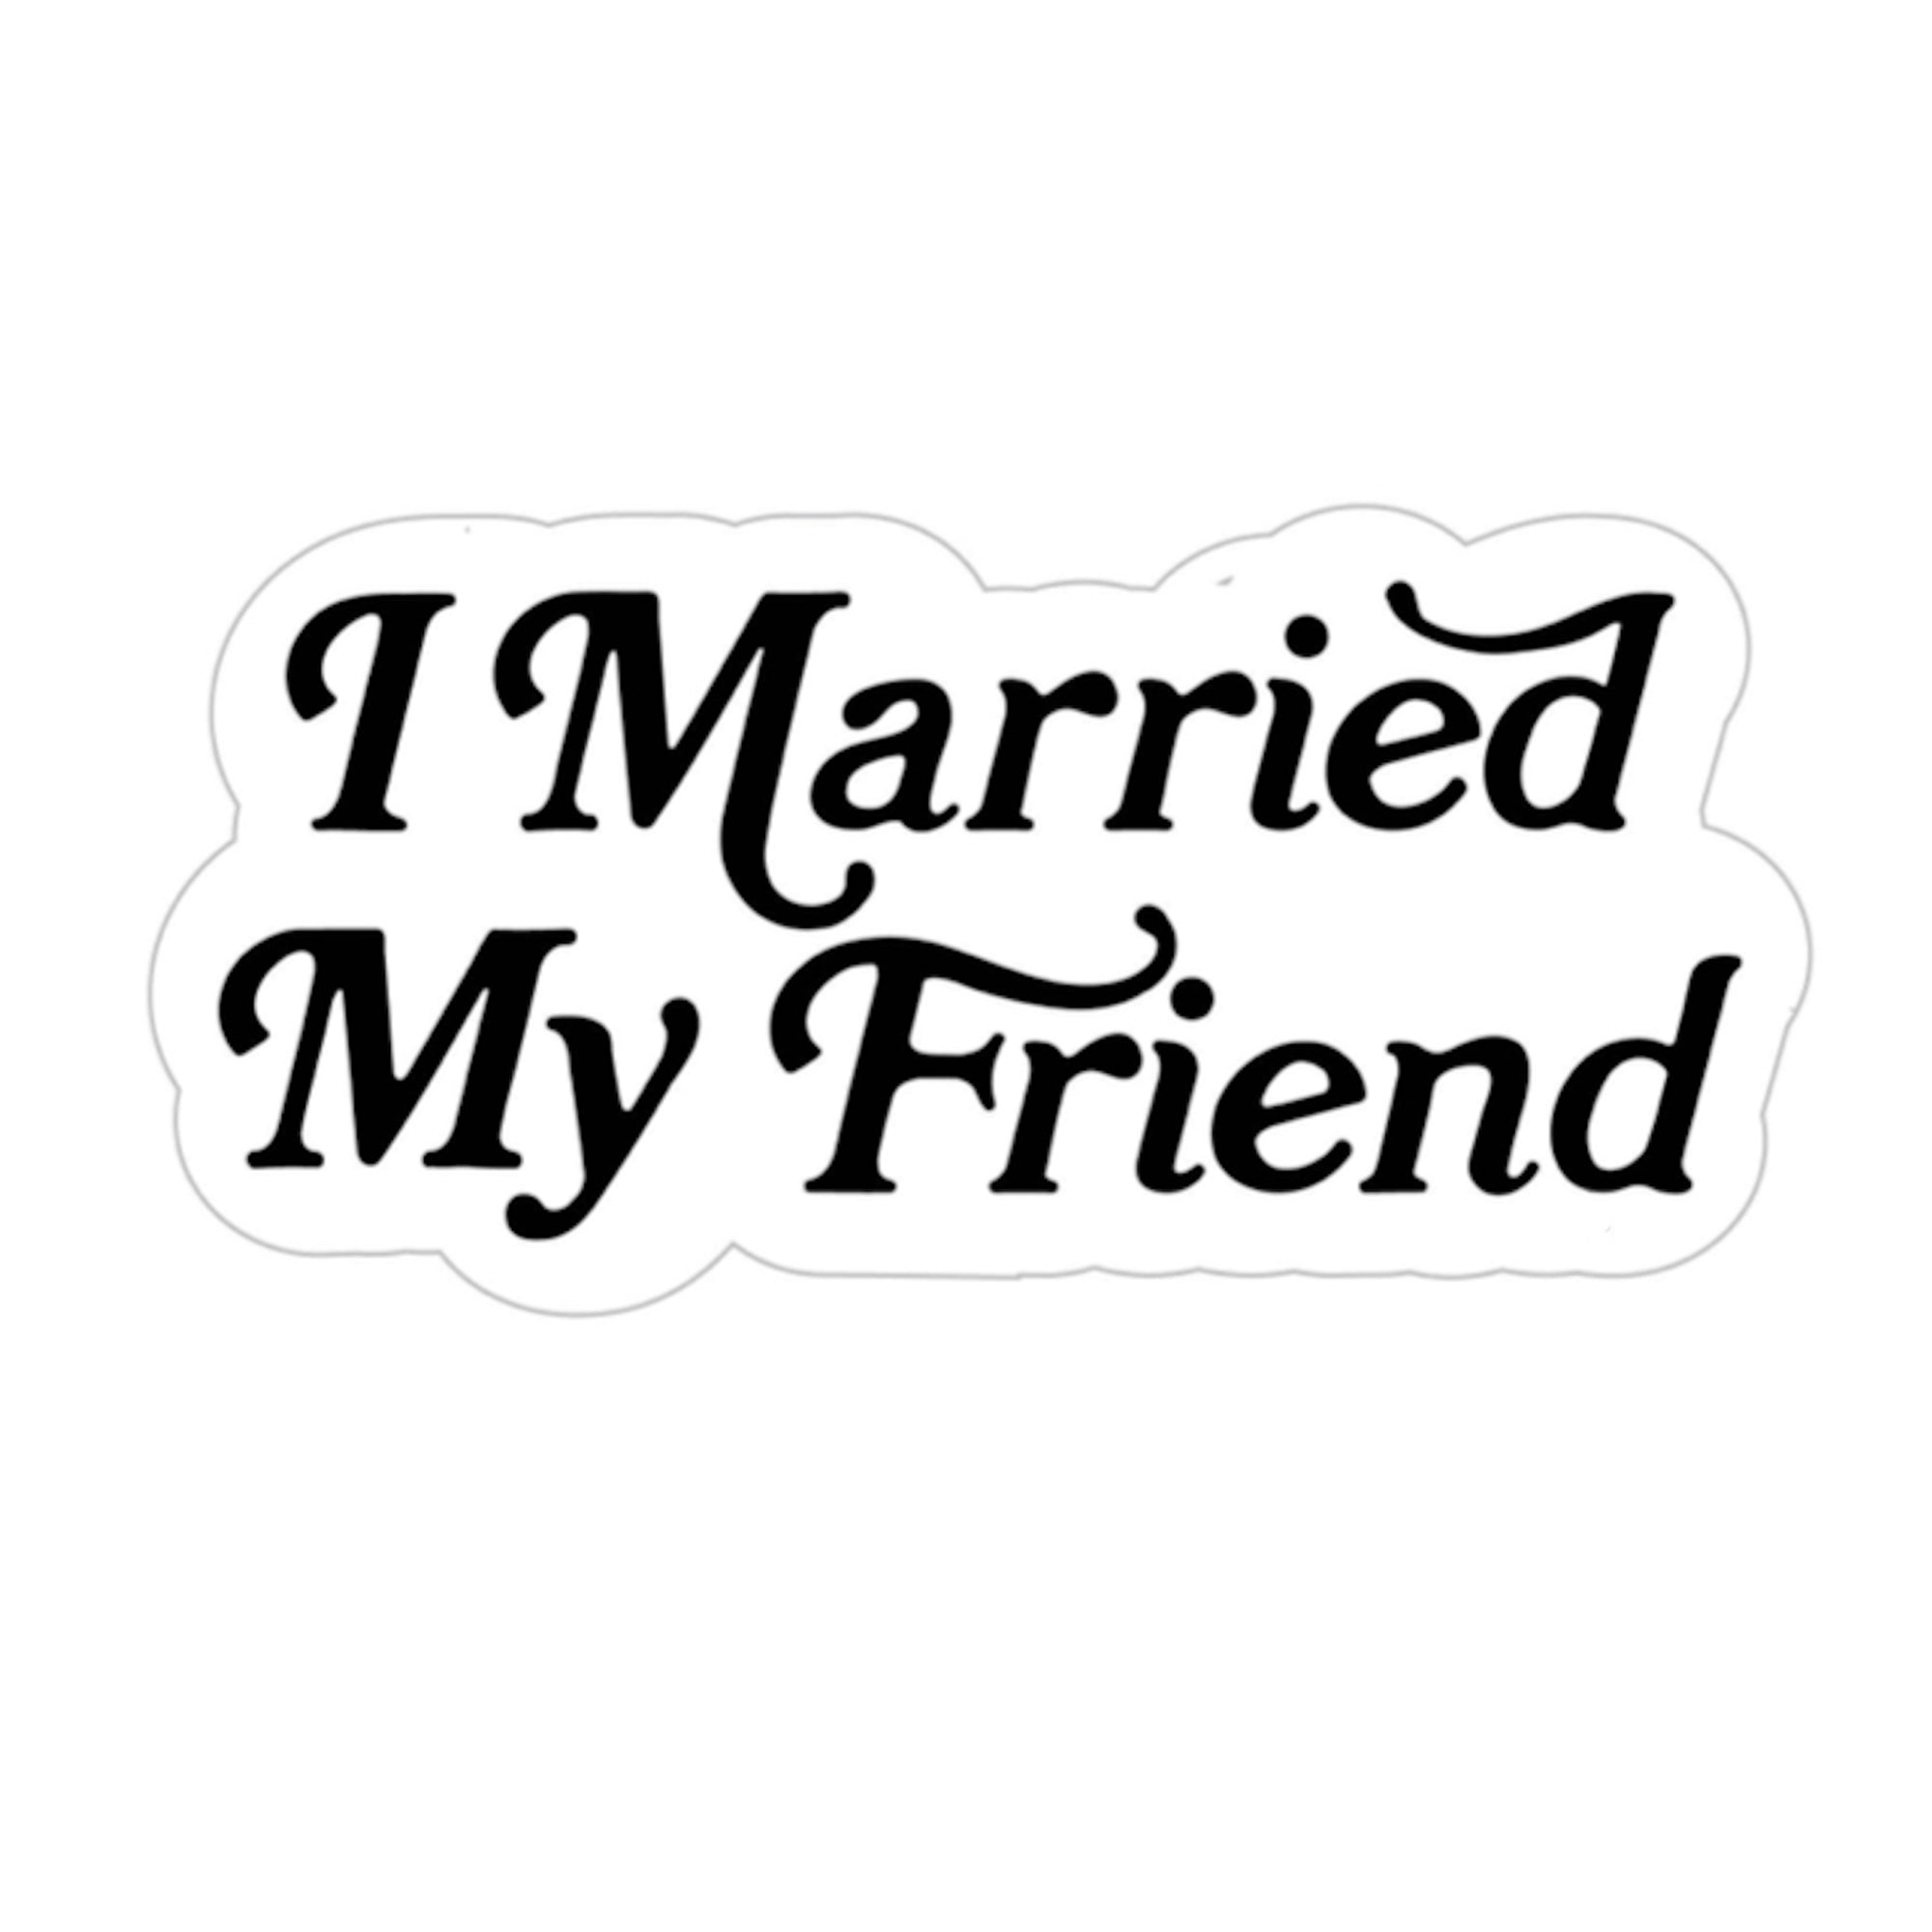 I Married My Friend - Sticker